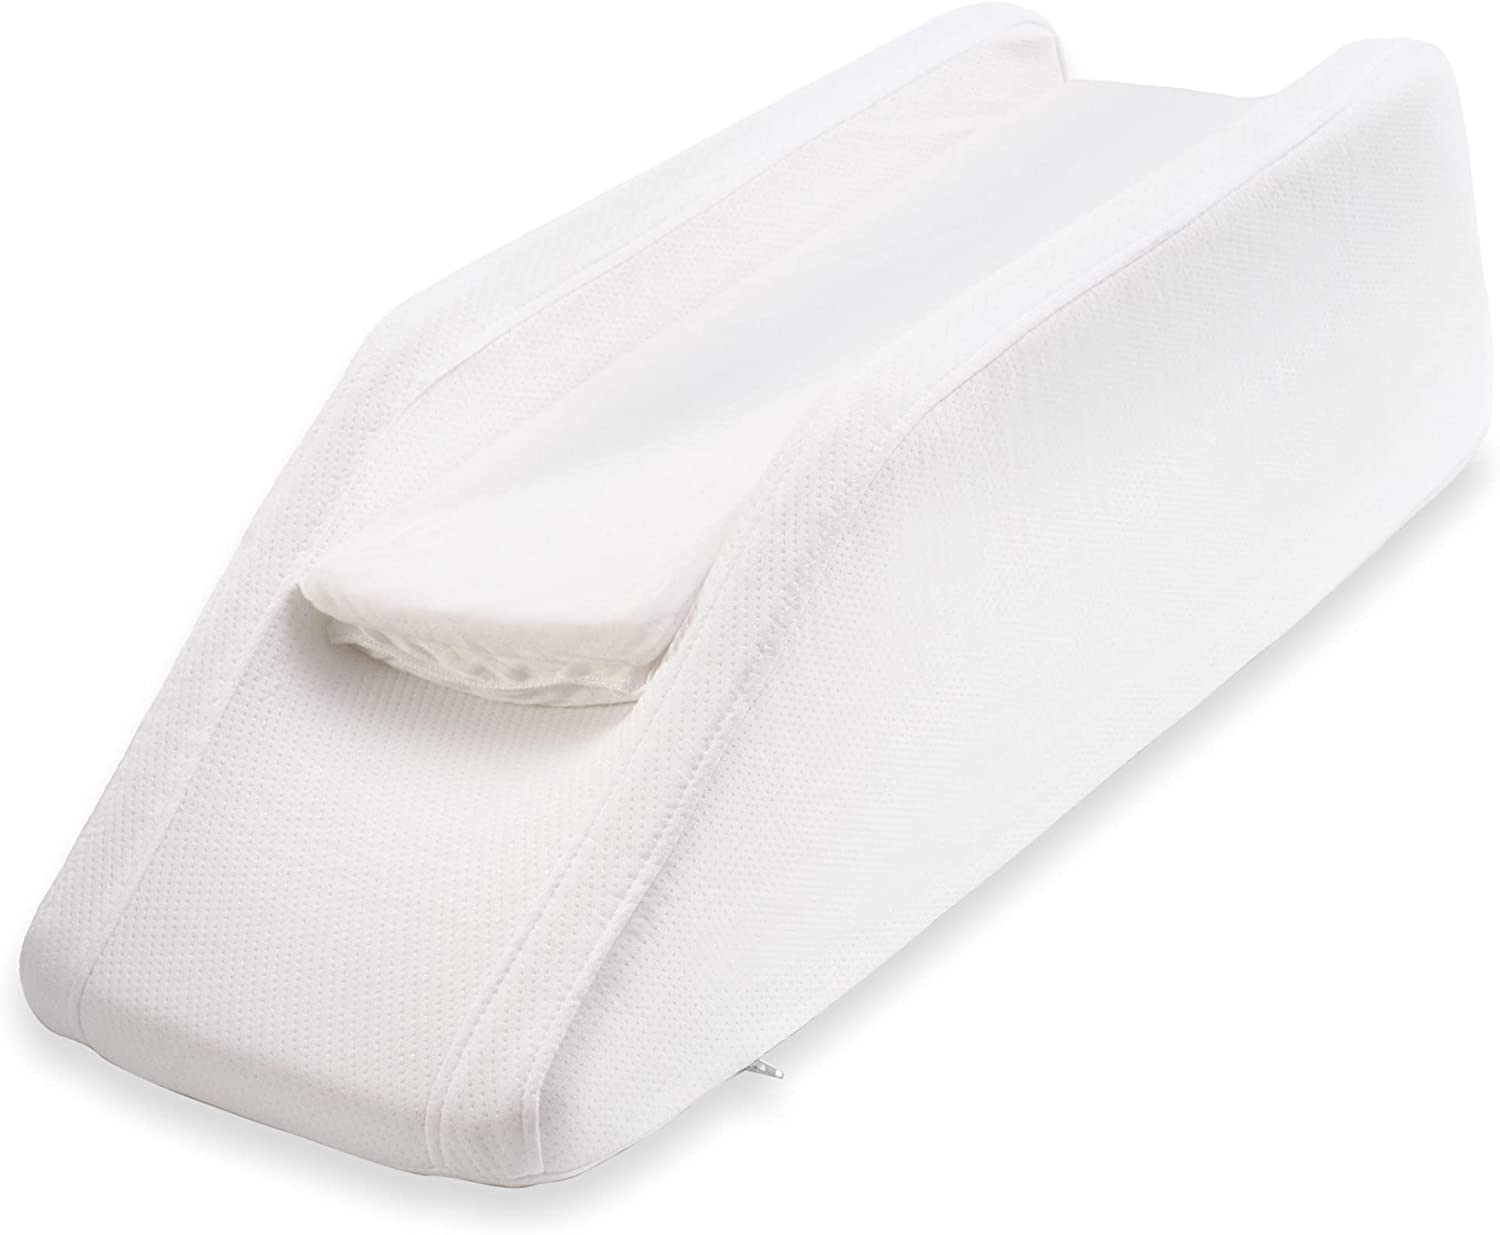 Velvet Leg Pillow – Tranquility Nurse Concierge